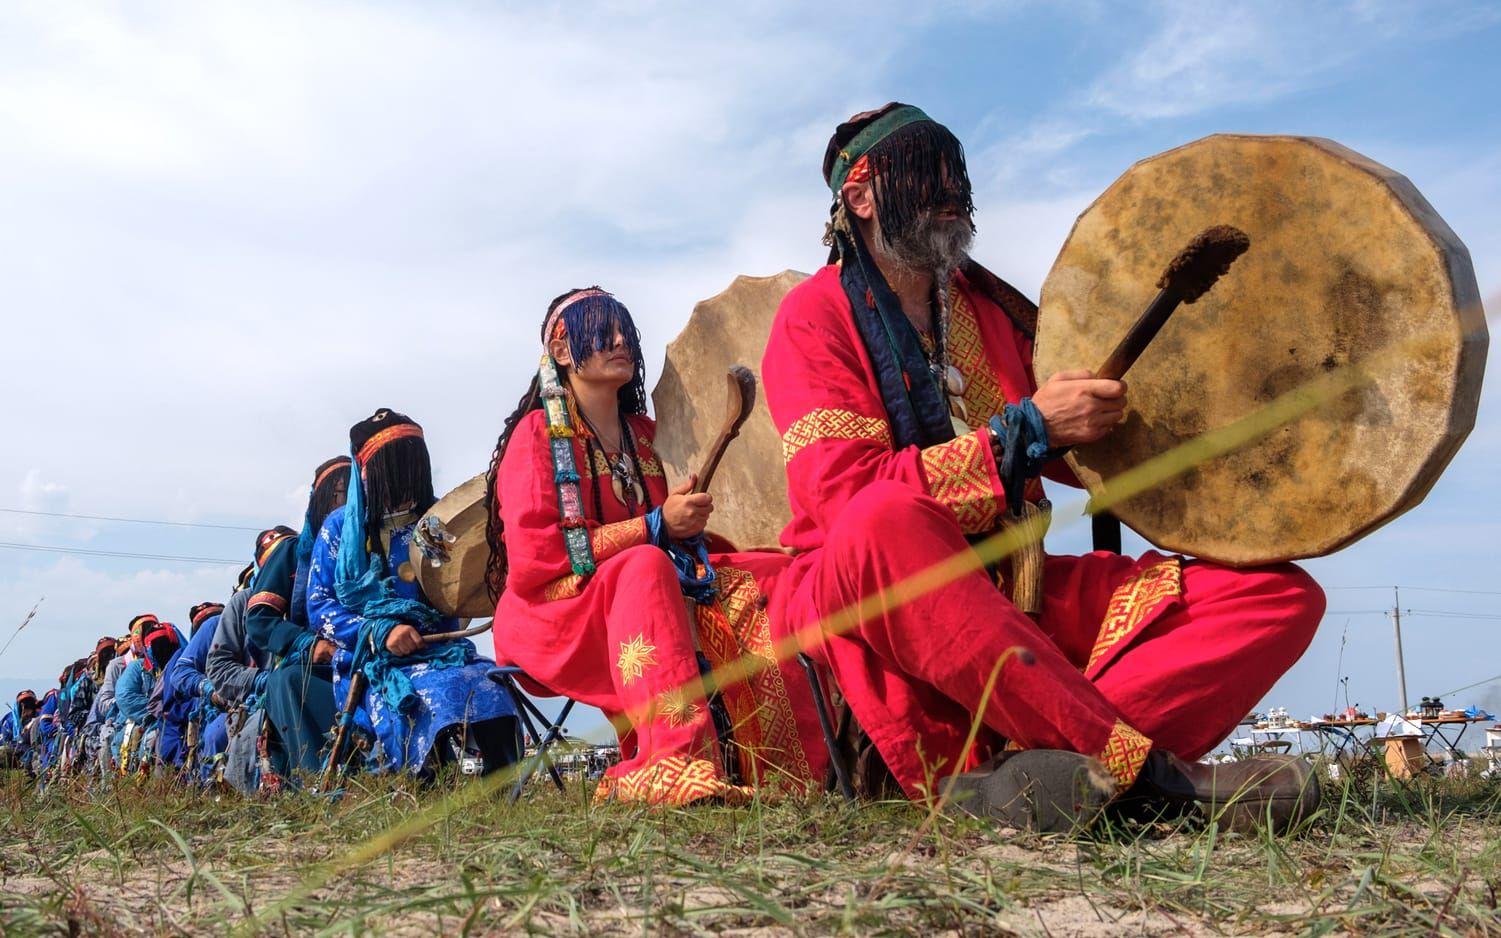 I samband med sommarsolståndet utför mongoliska schamaner, eller buus som de även kallas, särskilda eldritualer. På bilden ser man schamaner som utför ritualer för att det ska börja regna. 